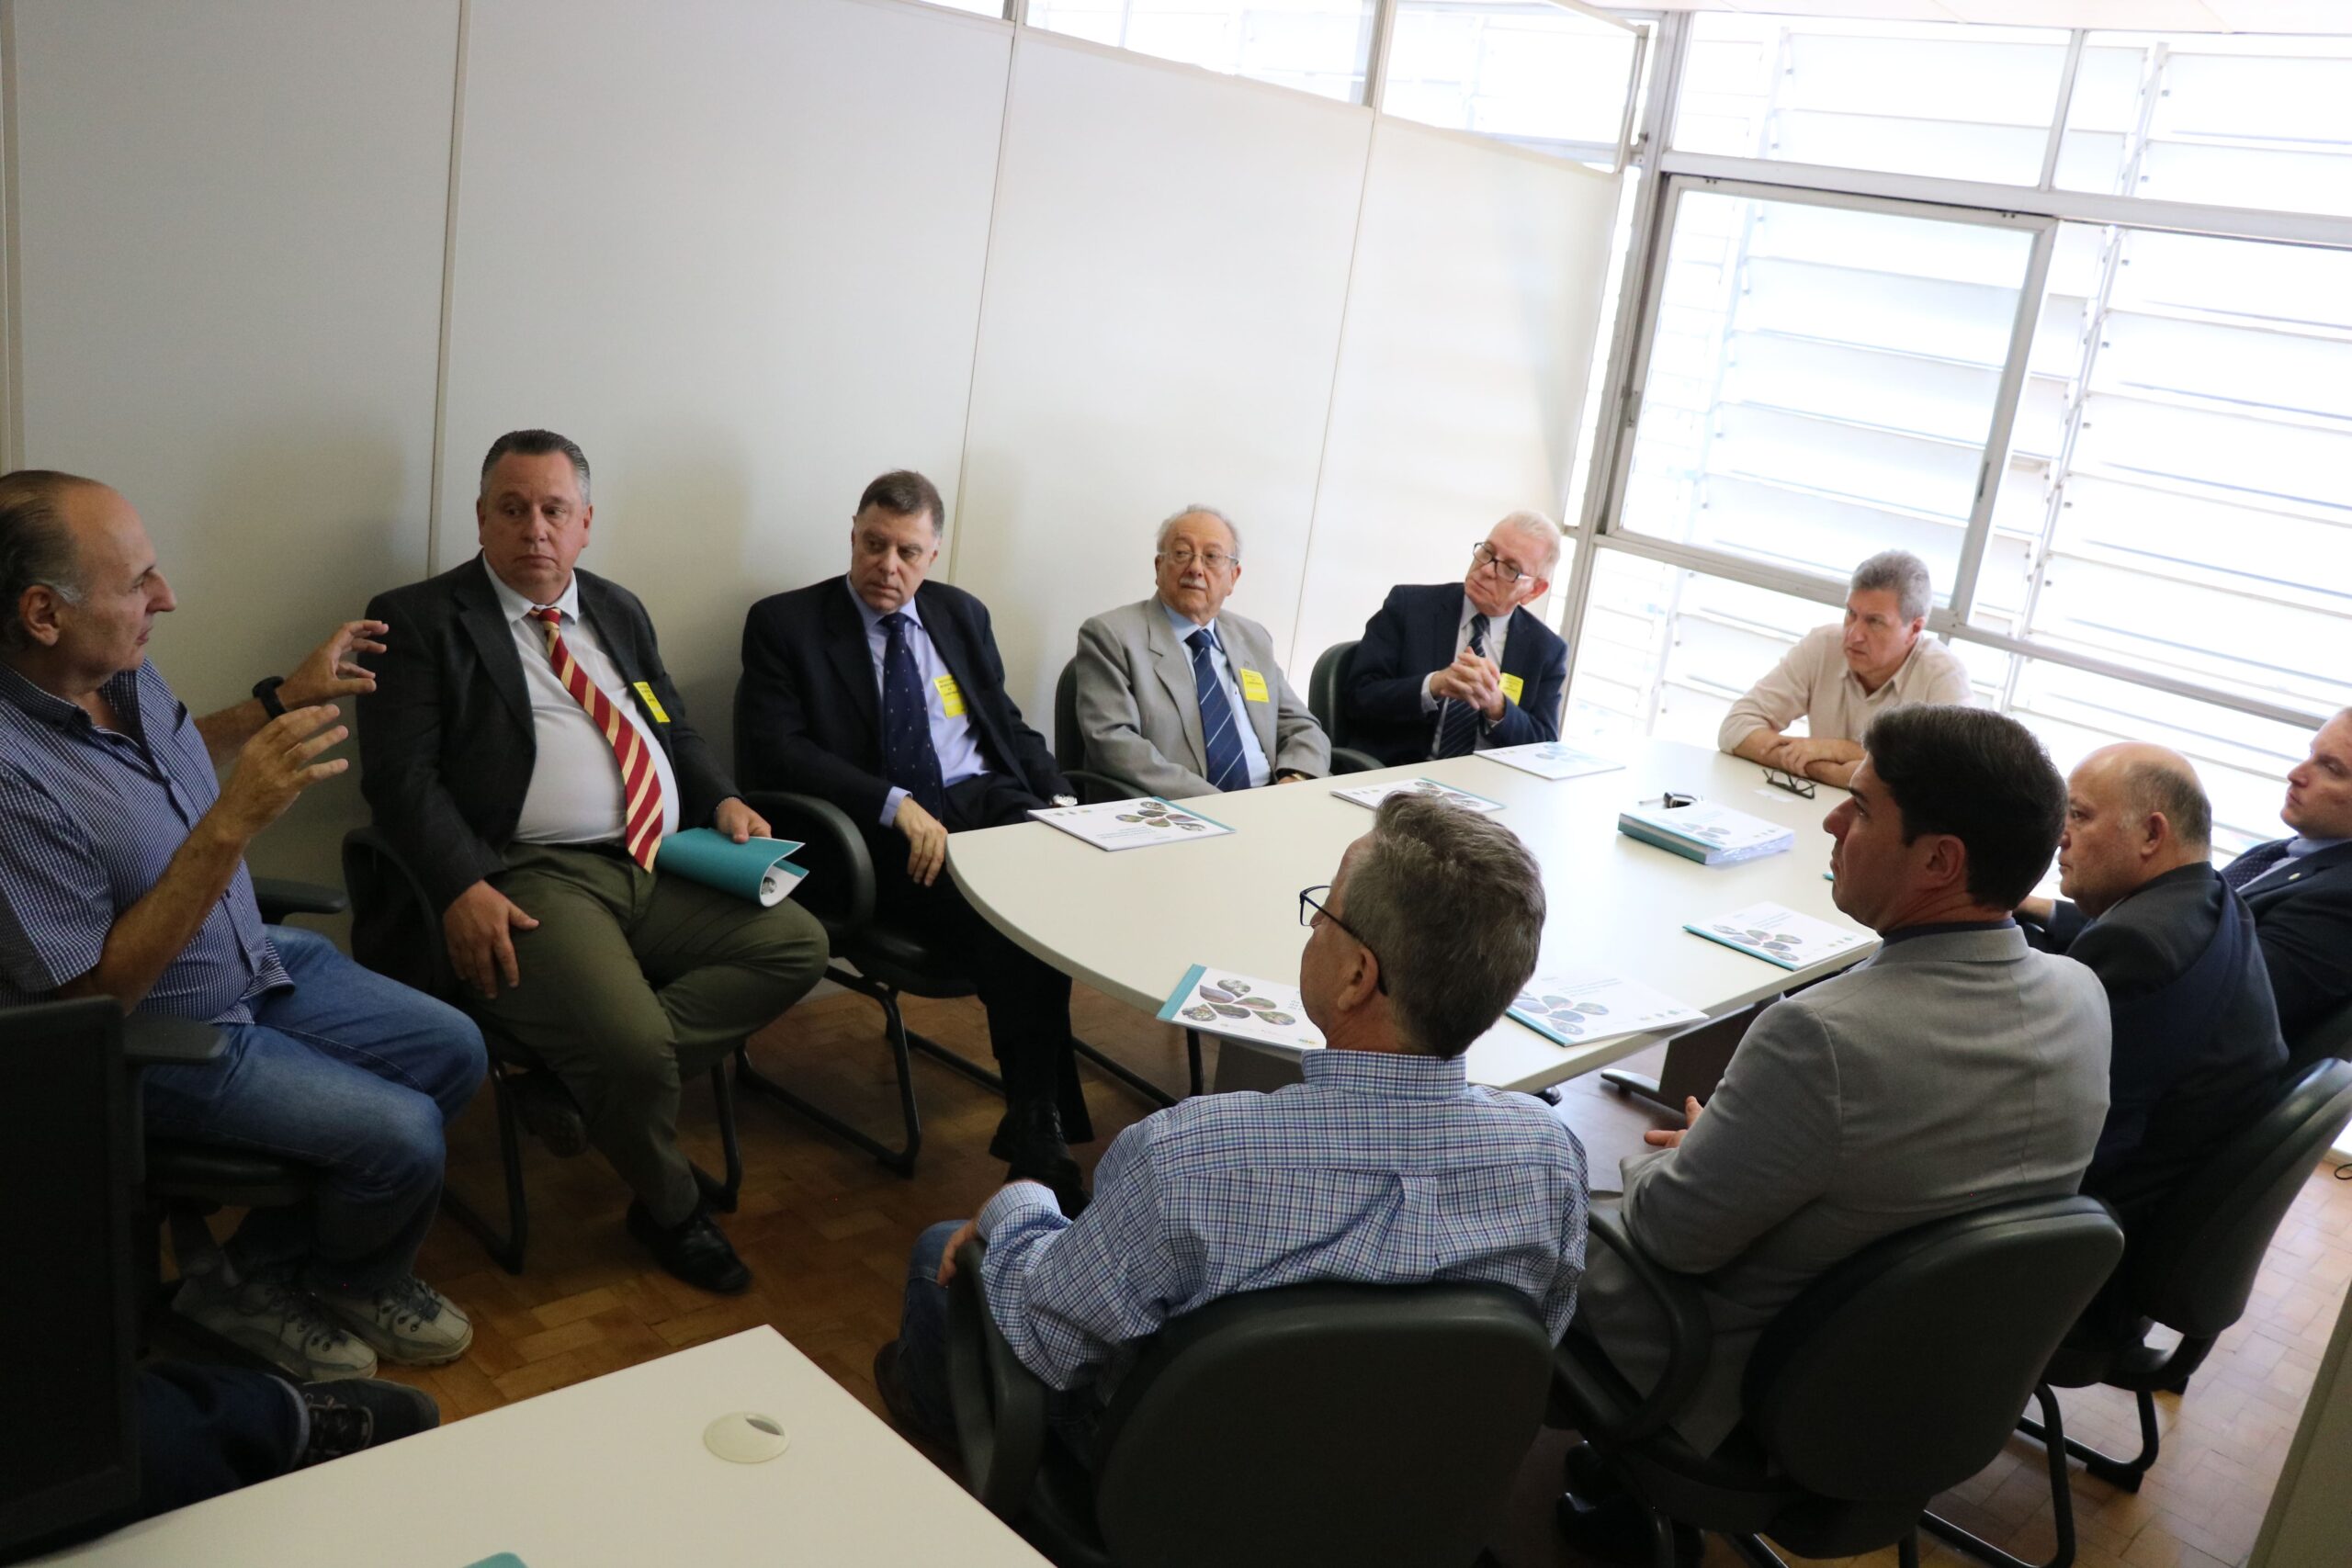 Na imagem aparece a comitiva do CRMV-SP reunida com o secretário de Meio Ambiente. São 11 homens sentados ao entorno de uma mesa cinza clara. O secretário está na cabeceira da mesa e em sua direita, está o presidente do CRMV-SP. Ao fundo uma ampla janela com venezianas.